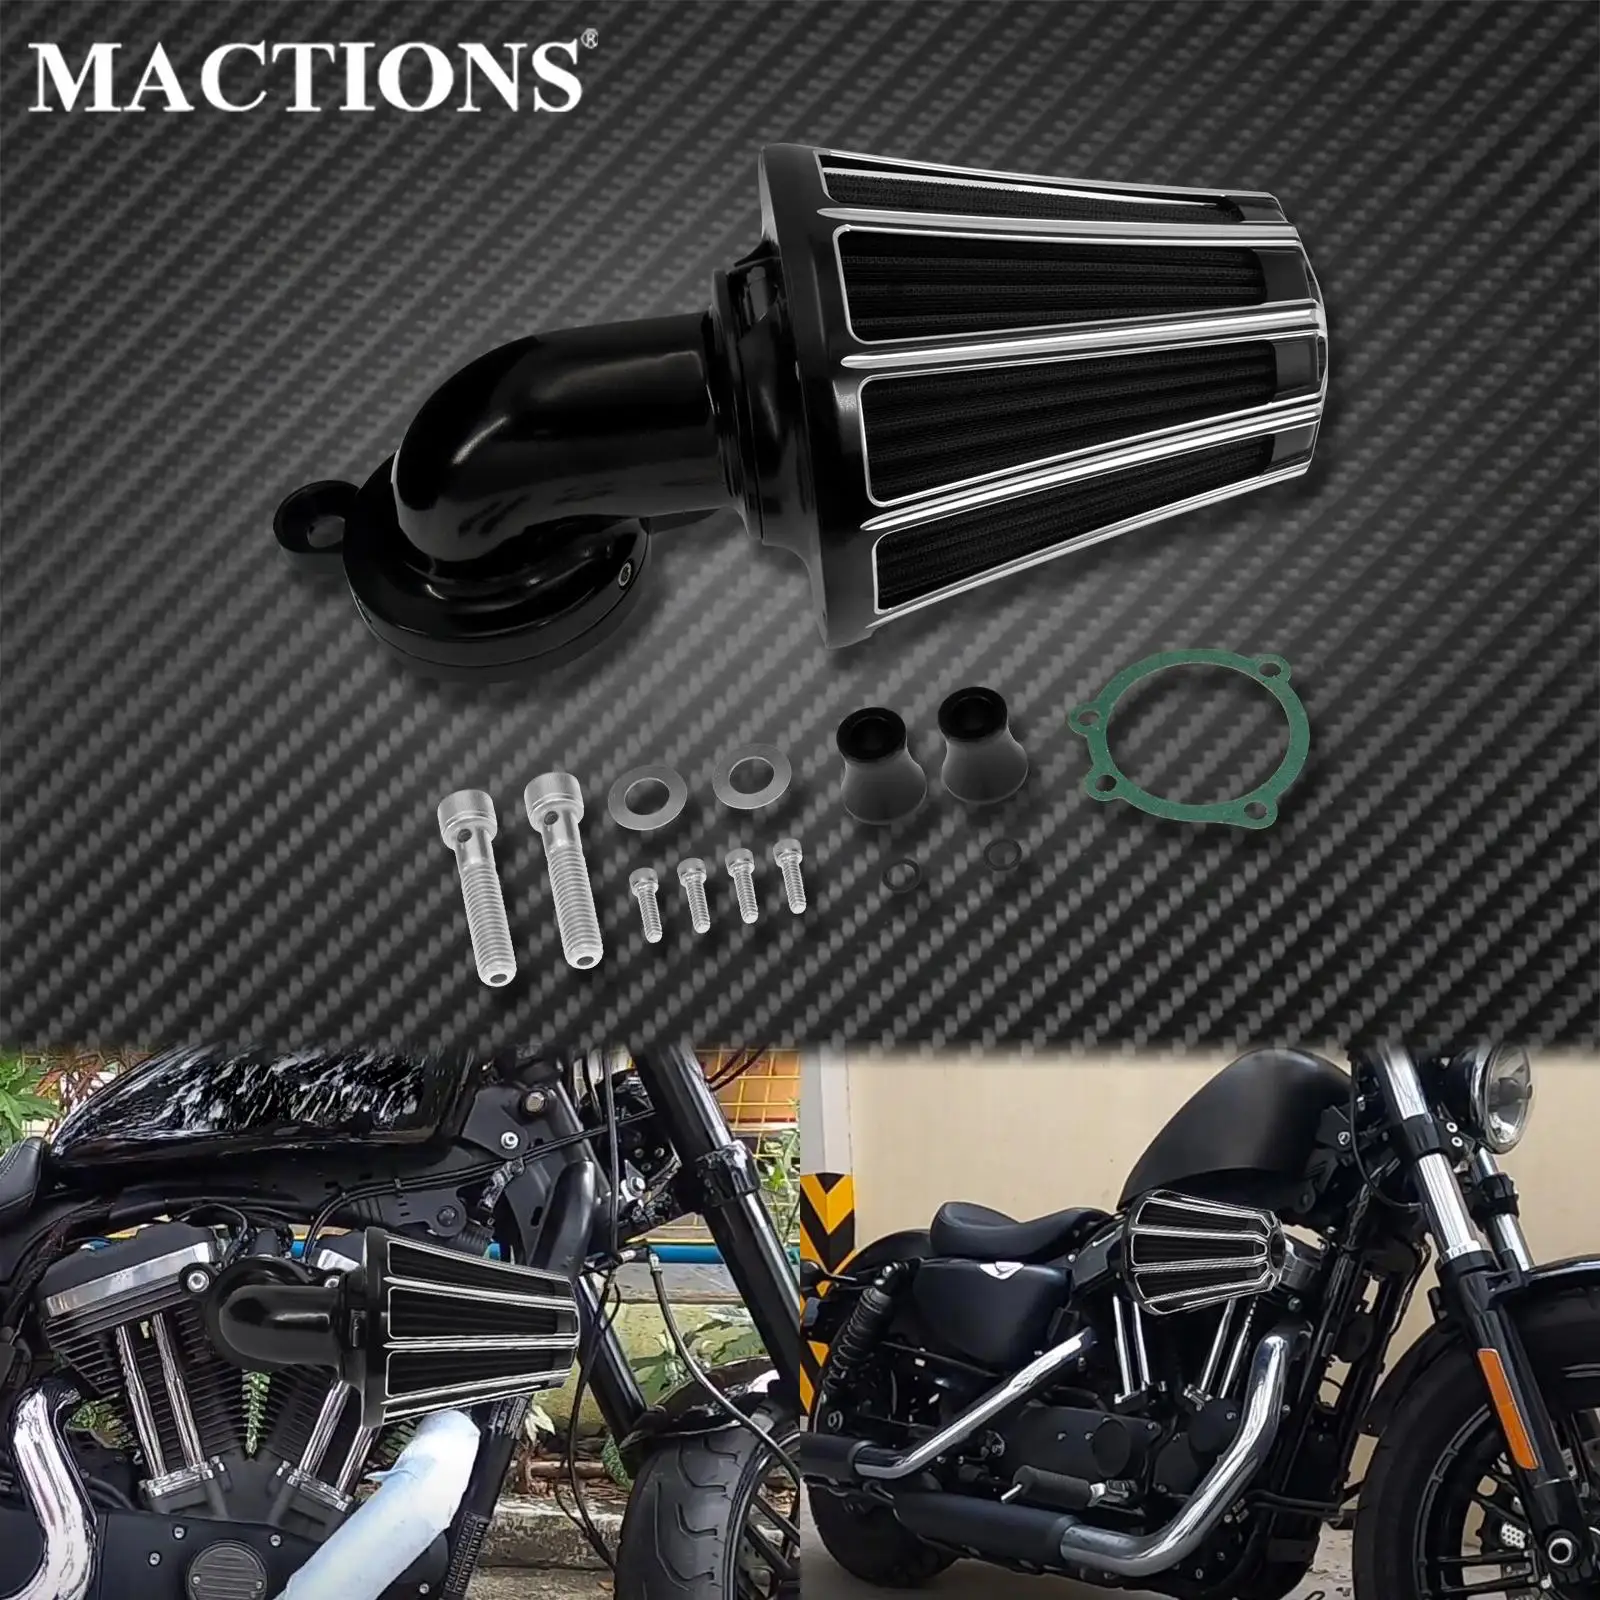 Filtro de admisión de limpiador de aire CNC para motocicleta, accesorio de aluminio para Harley Sportster XL883 1200 Iron 883 XL883N Iron 1200 XL1200NS 2004-2021